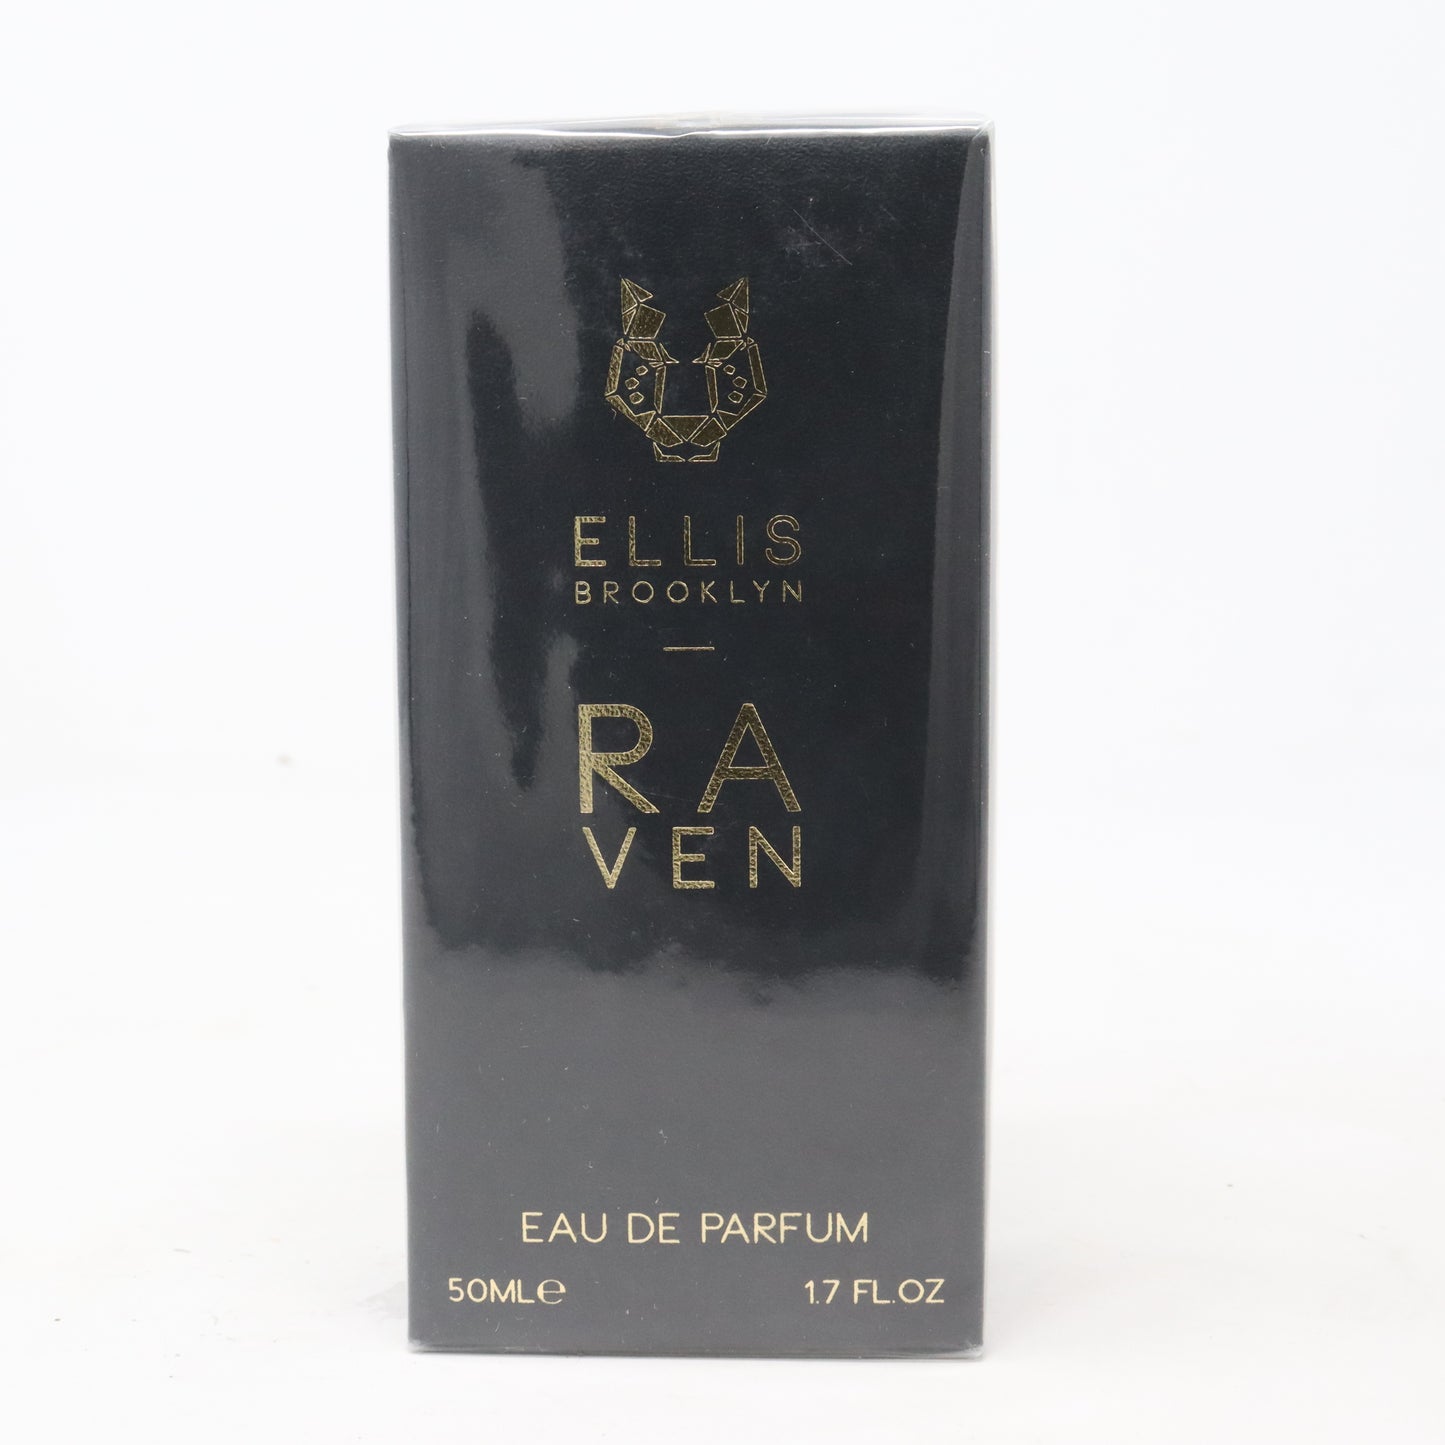 Raven Eau De Parfum 50 ml